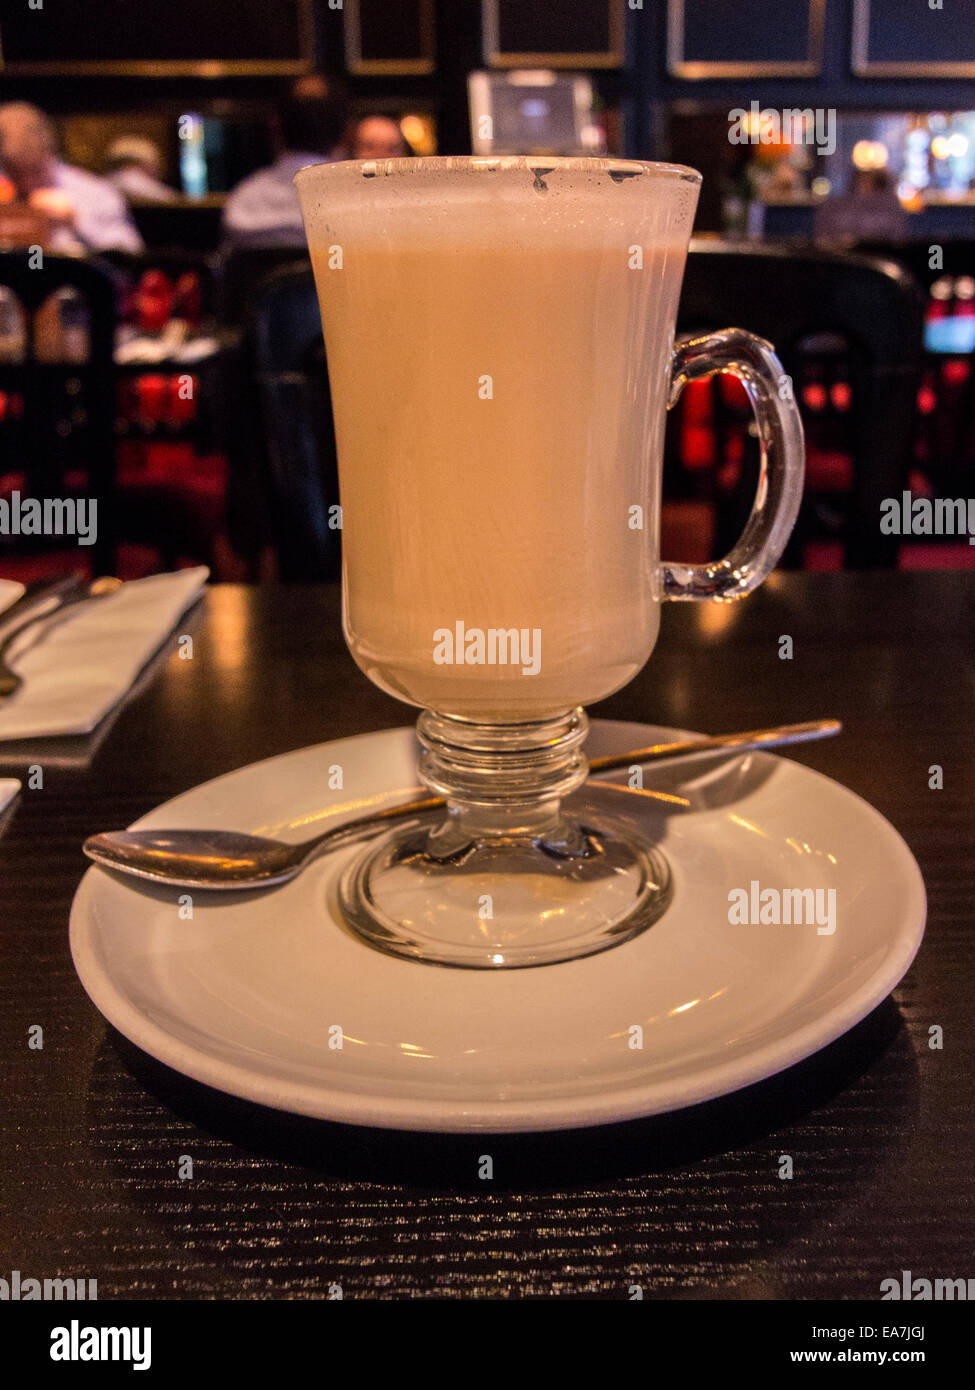 Tall Latte, Close up image représentant le café latte chaud dans un verre Tumbler. Banque D'Images